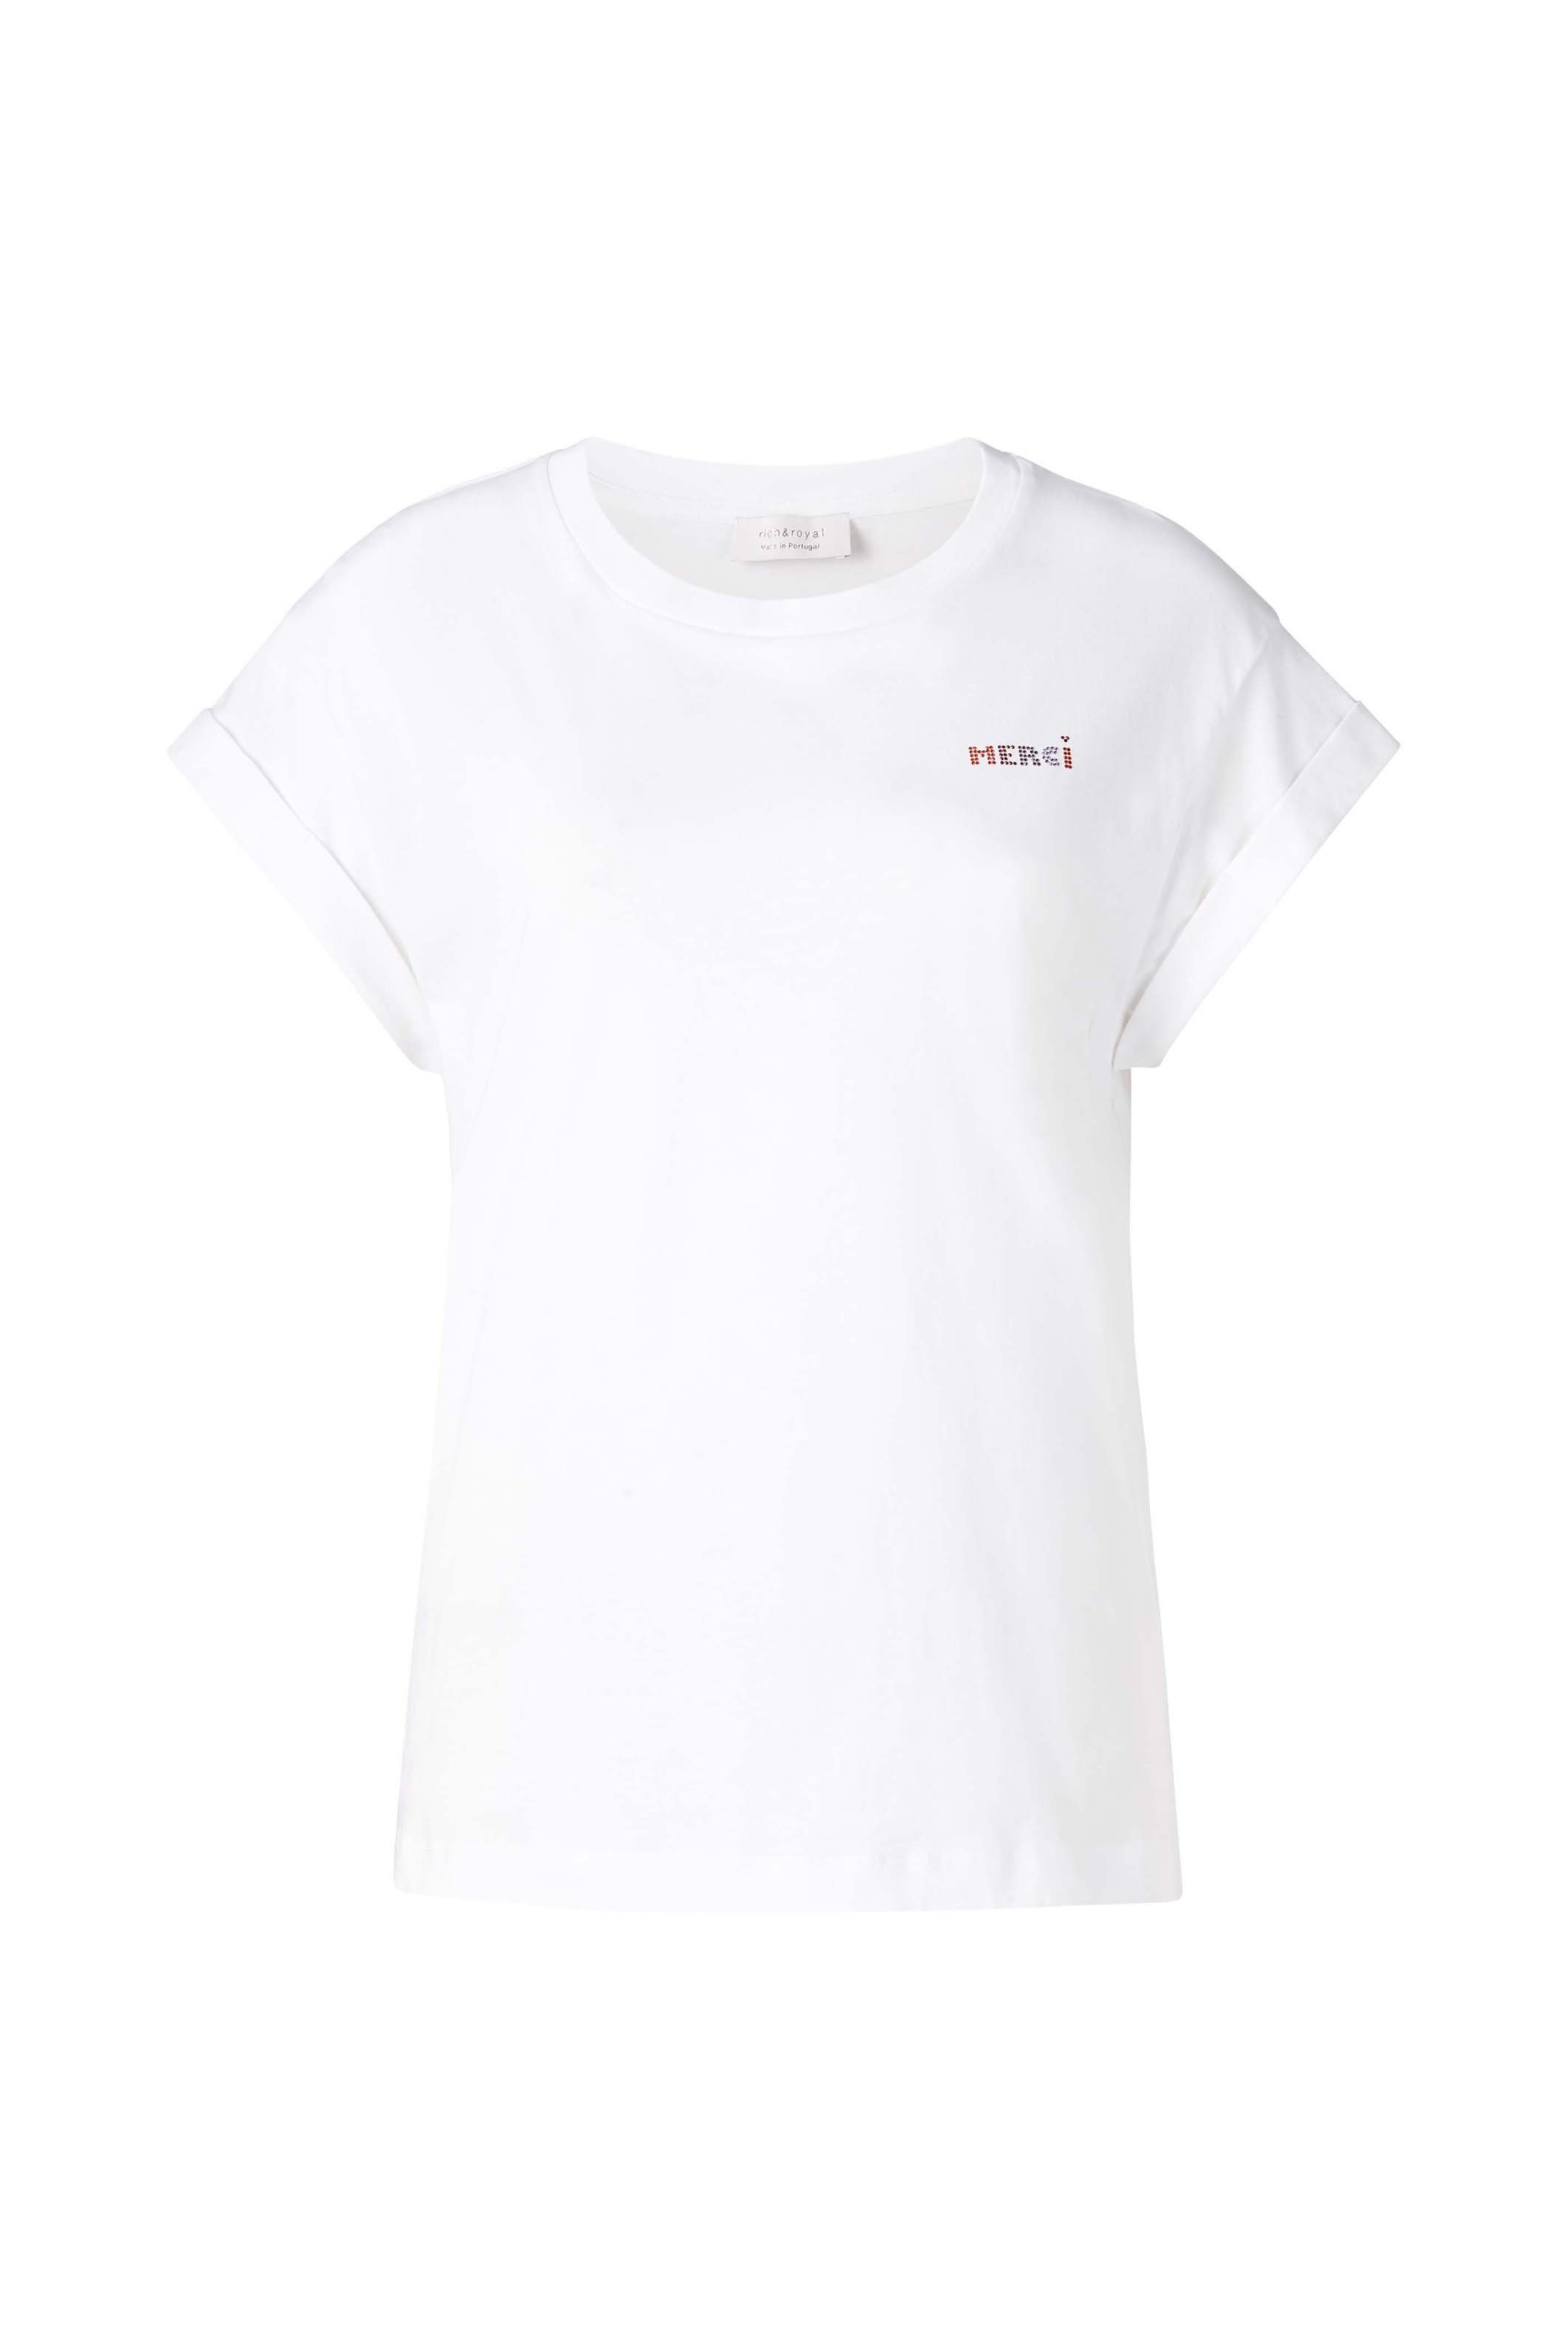 Rich & Royal in weiß Brusthöhe mit Glitzer-Print original T-Shirt